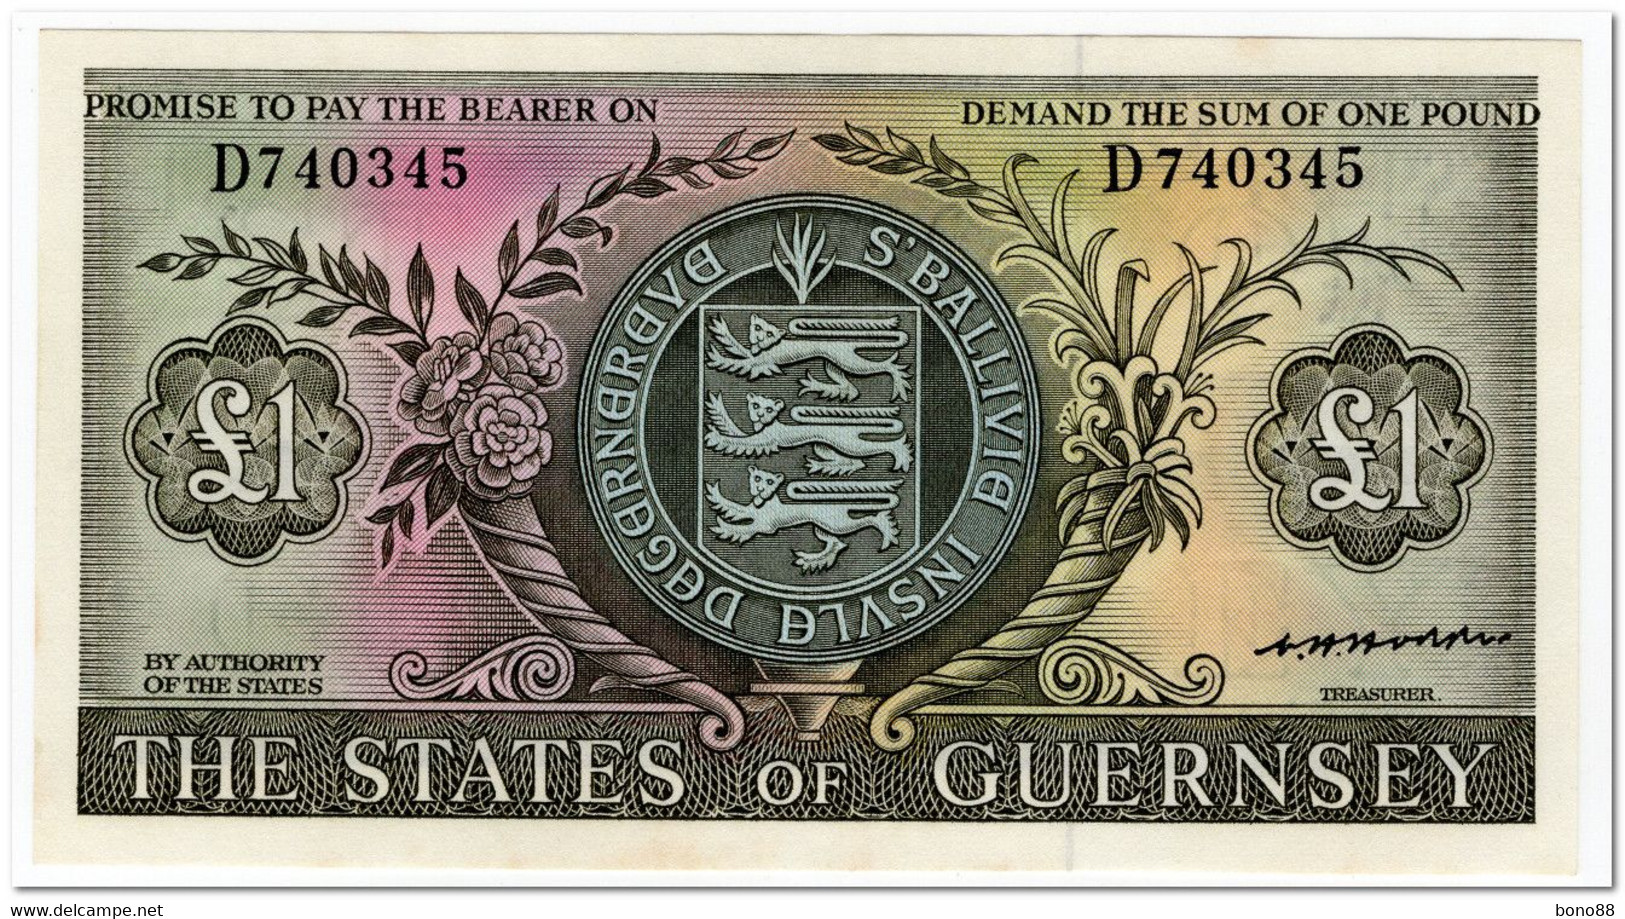 GUERNSEY,1 POUND,1969,P.45b,AU-UNC - Guernsey